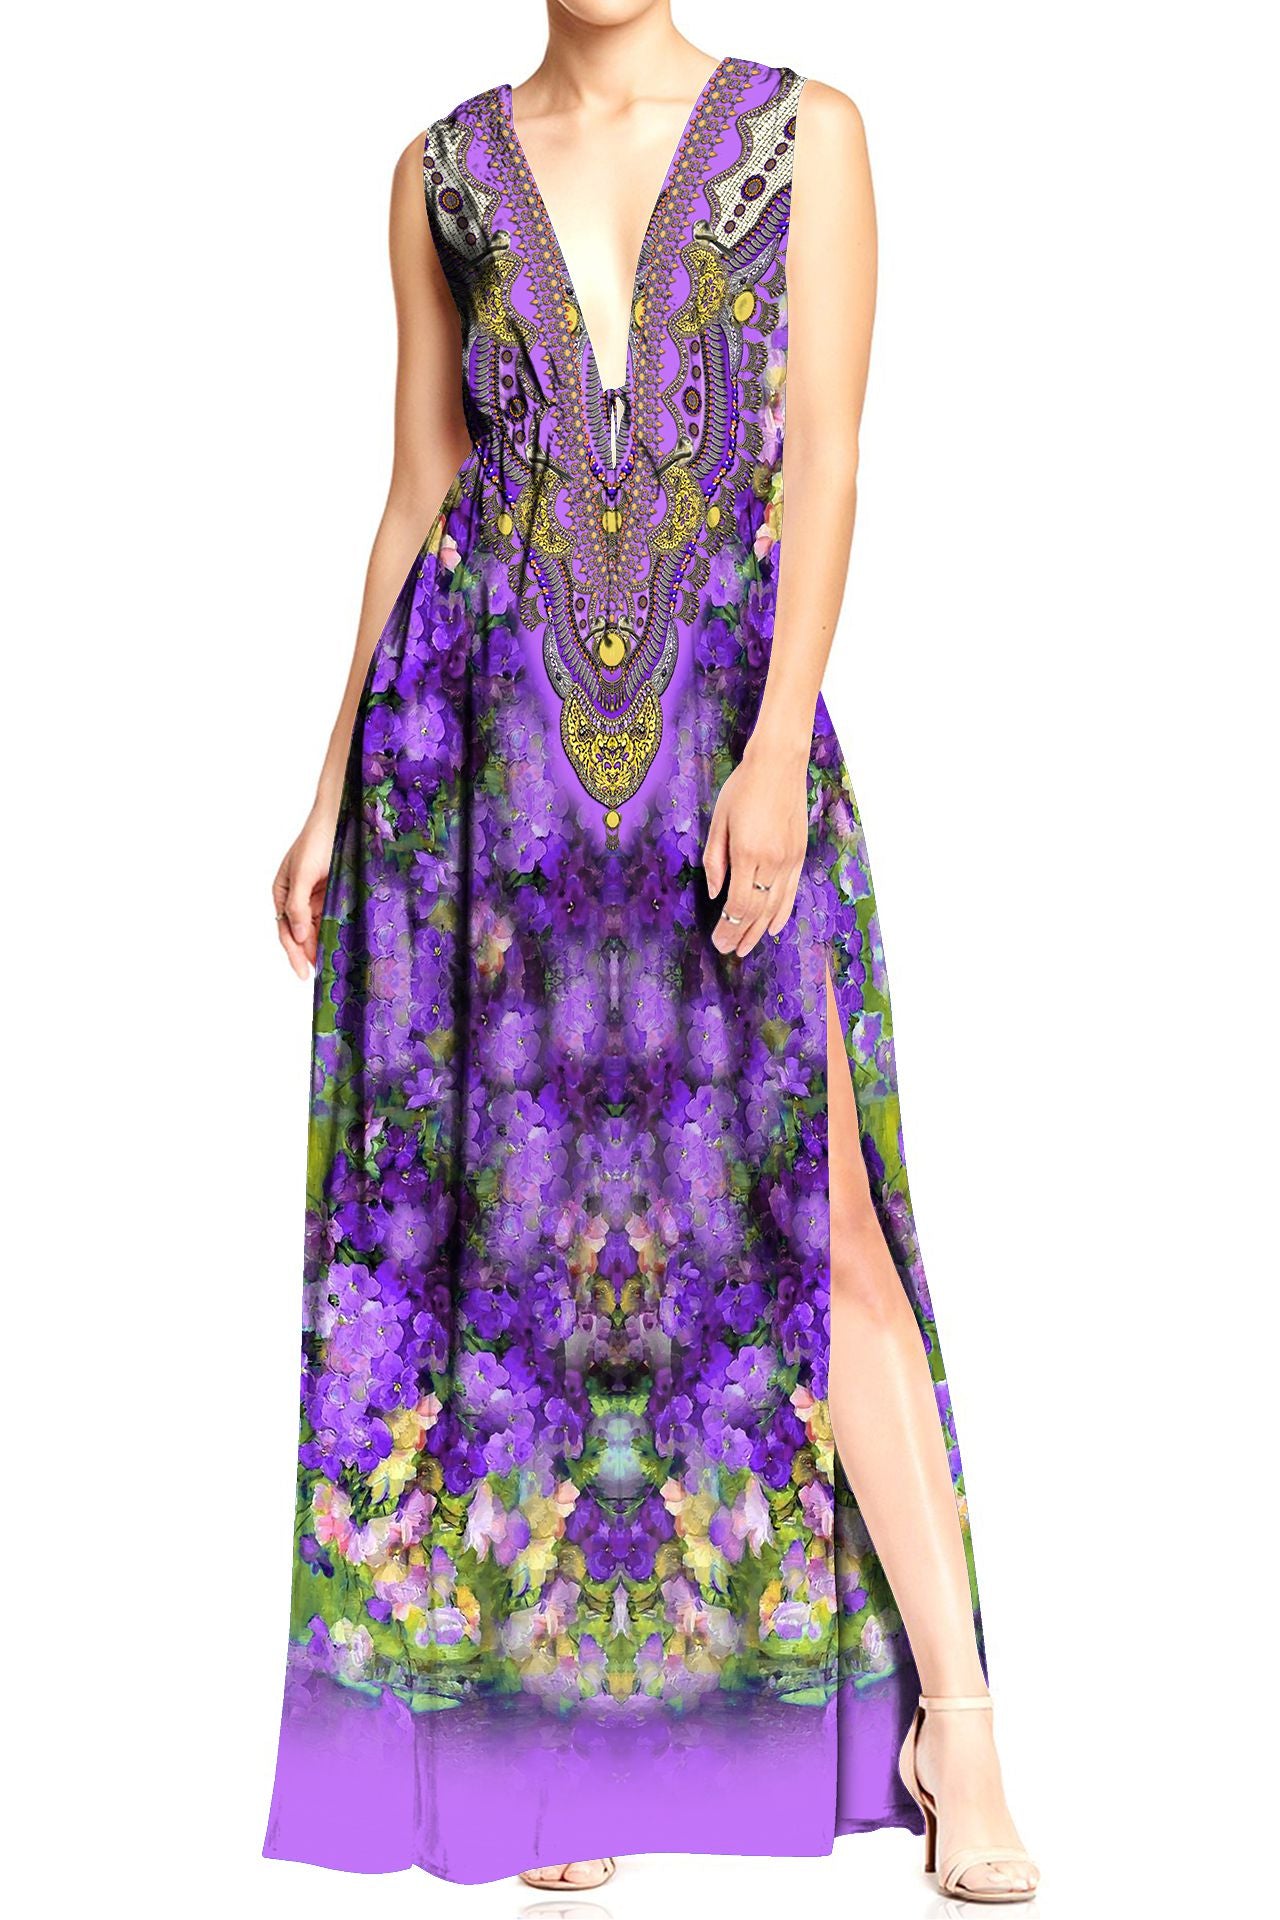 Designer  Hi Slit V Neck Maxi Dress in Purple Floral Print